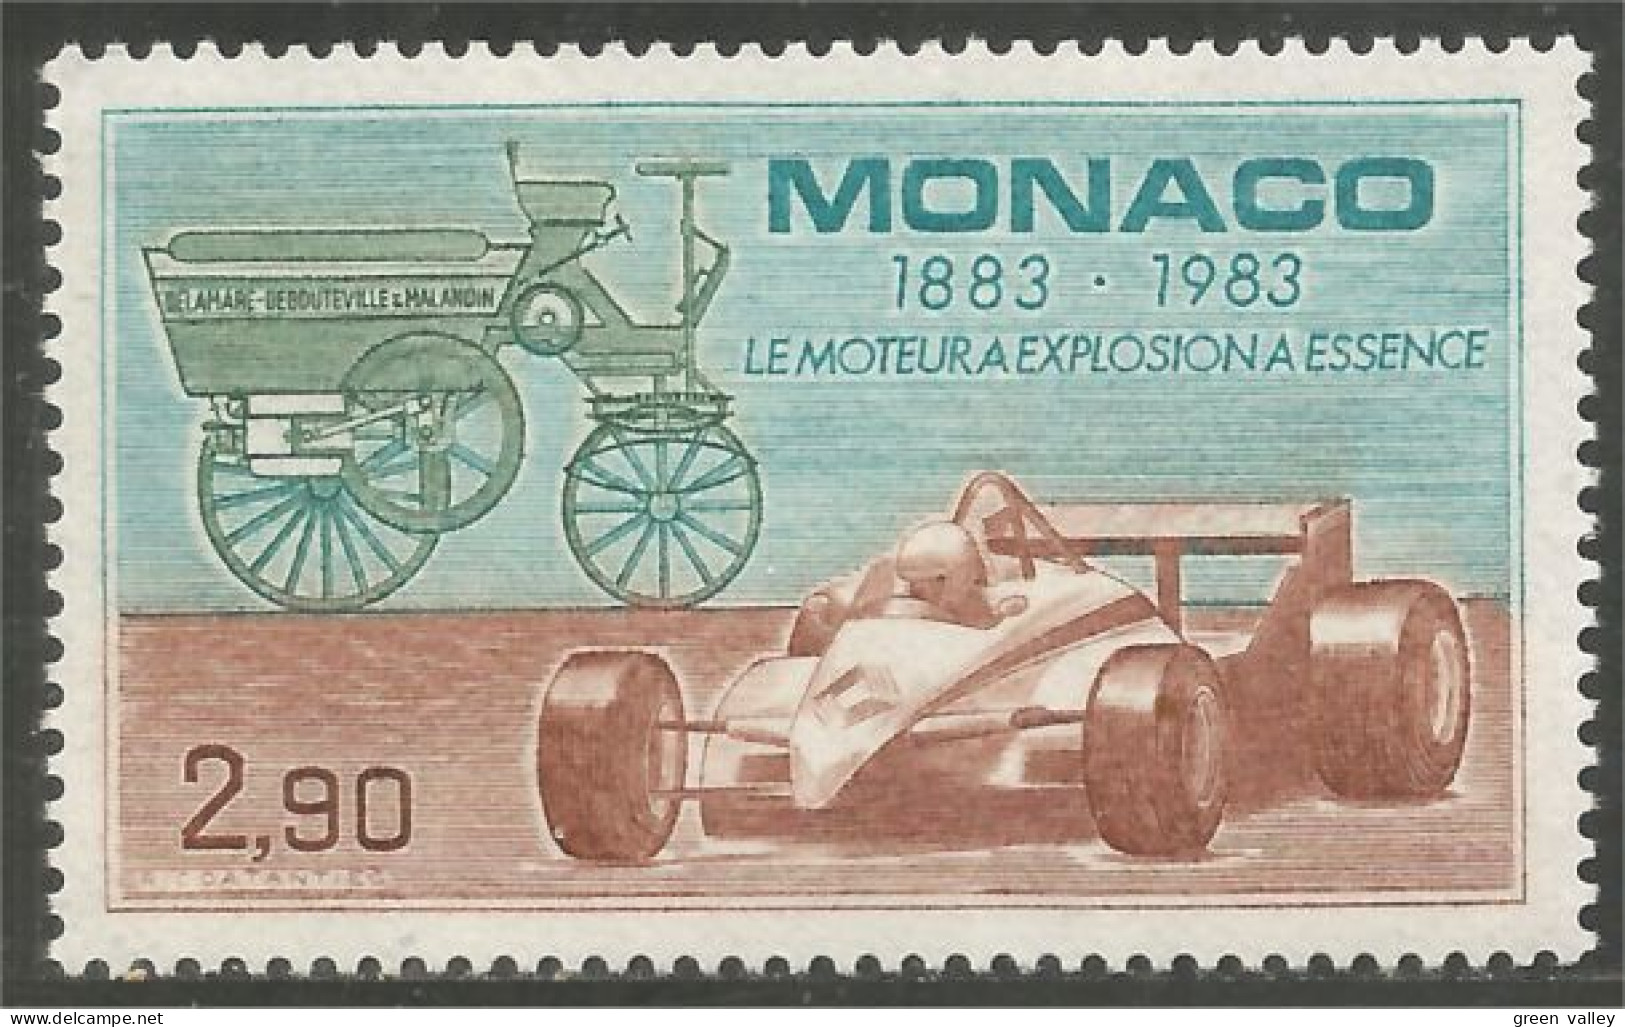 630 Monaco Formule Un Formula One 1 Moteur Motor Automobiles Cars Voitures MNH ** Neuf SC (MON-373b) - Auto's